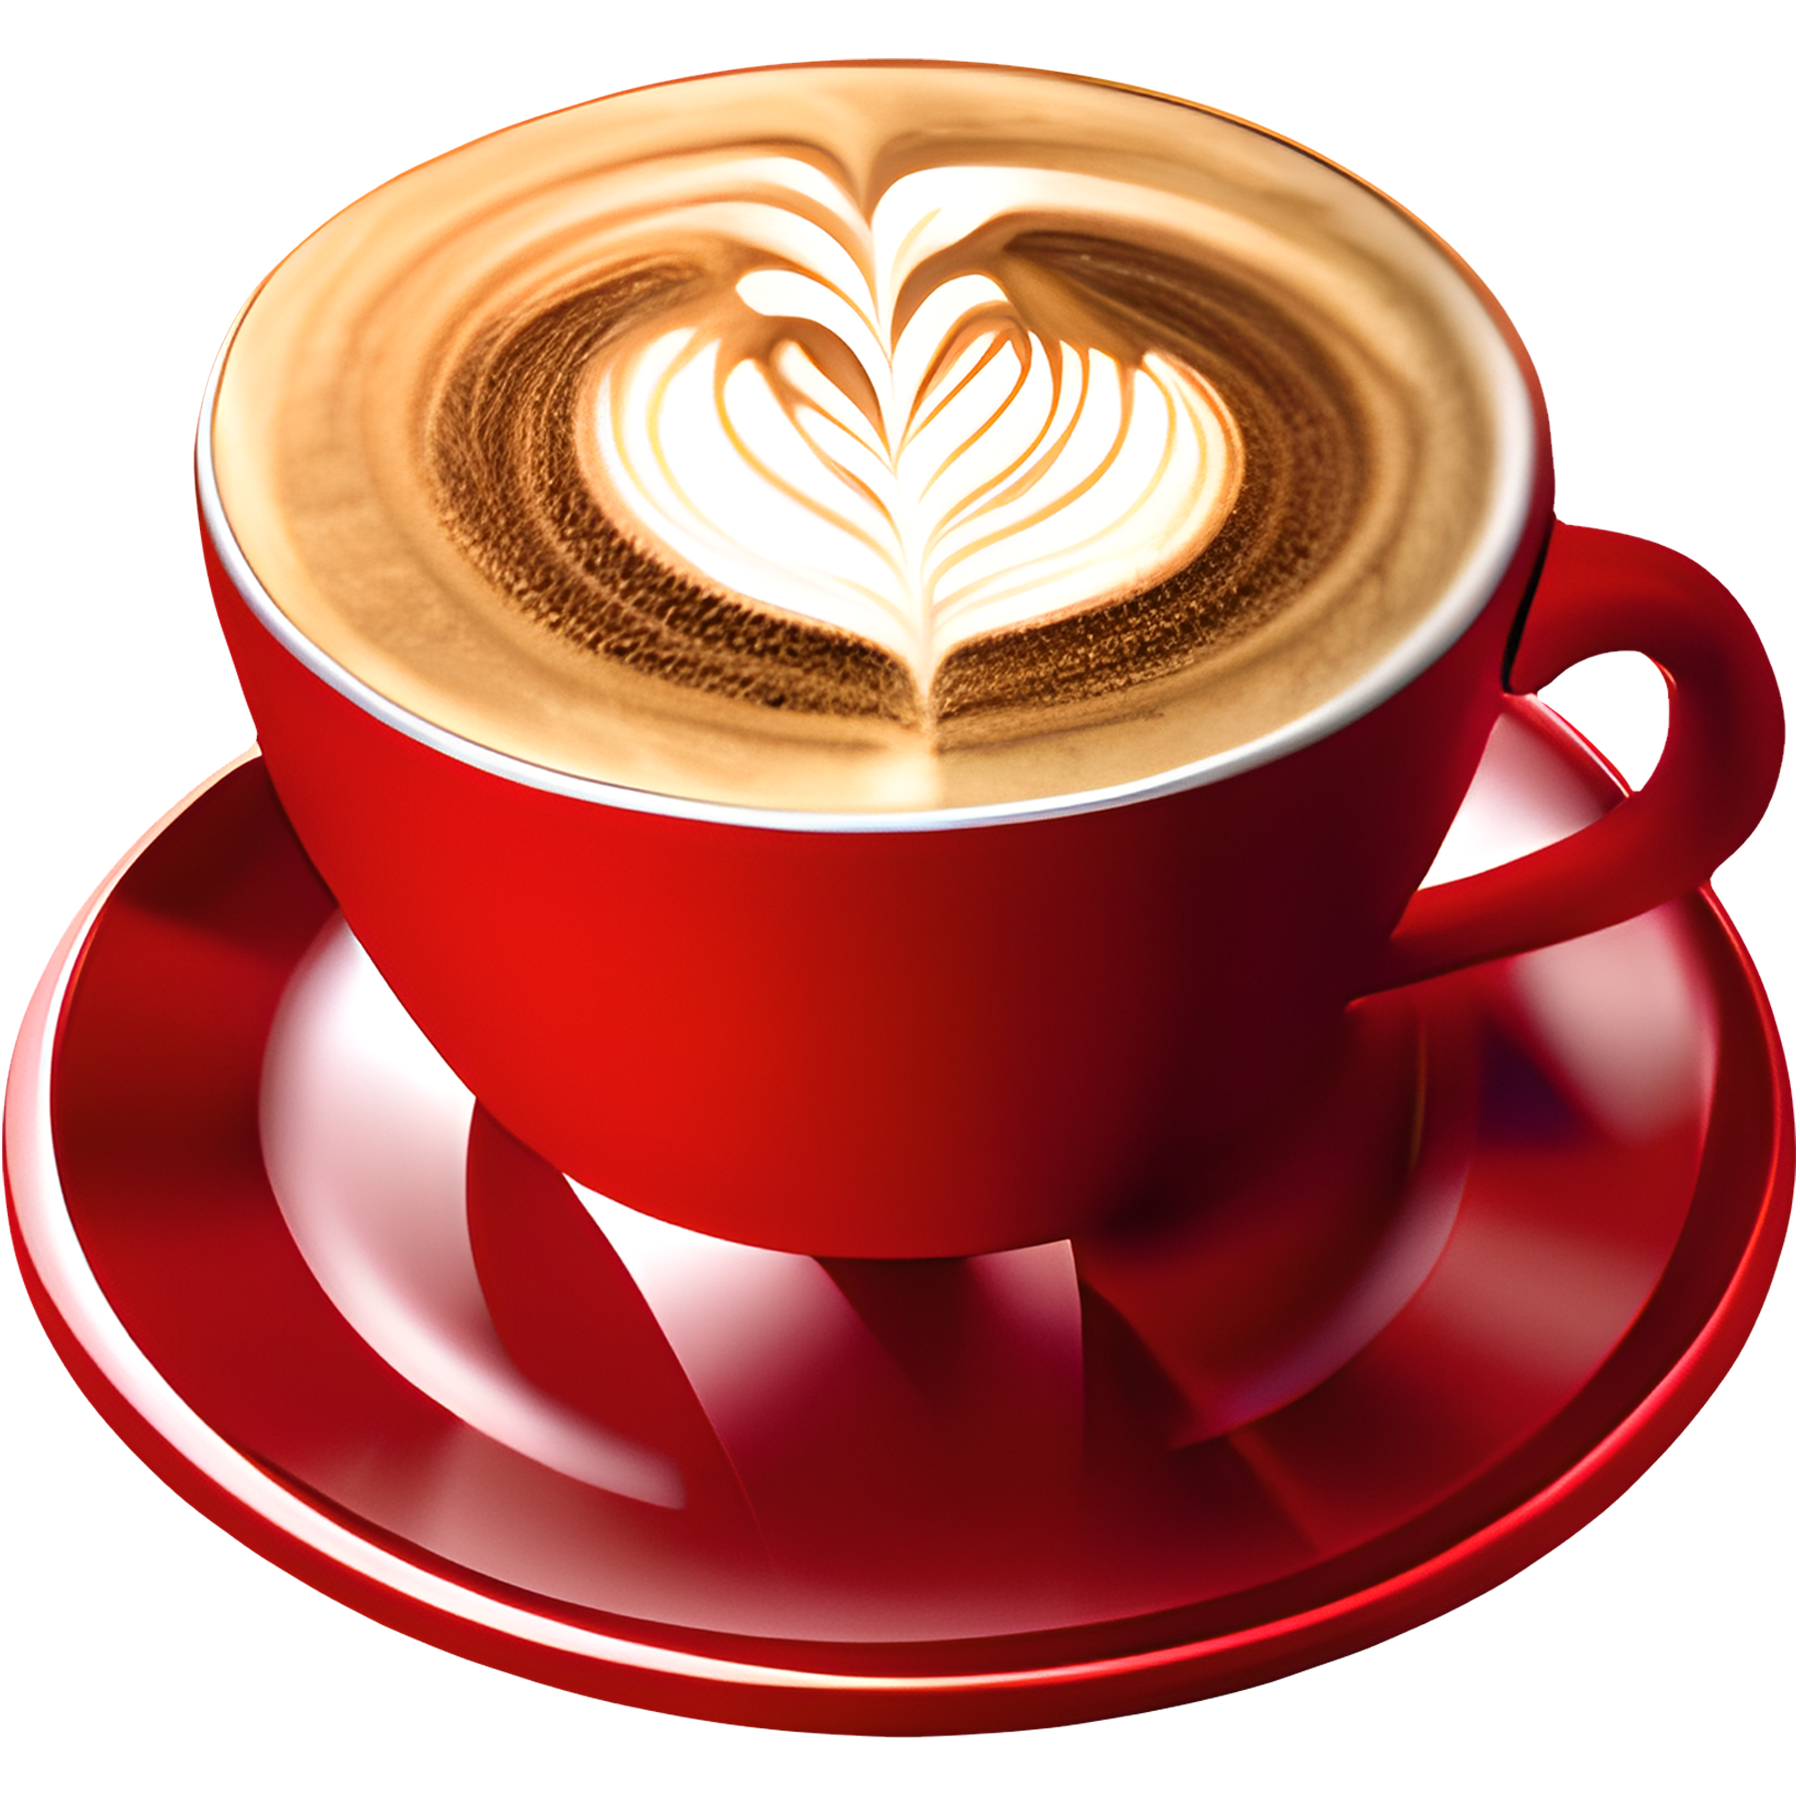 Café capuchino caliente con un corazón de espuma servido en una taza roja. 6